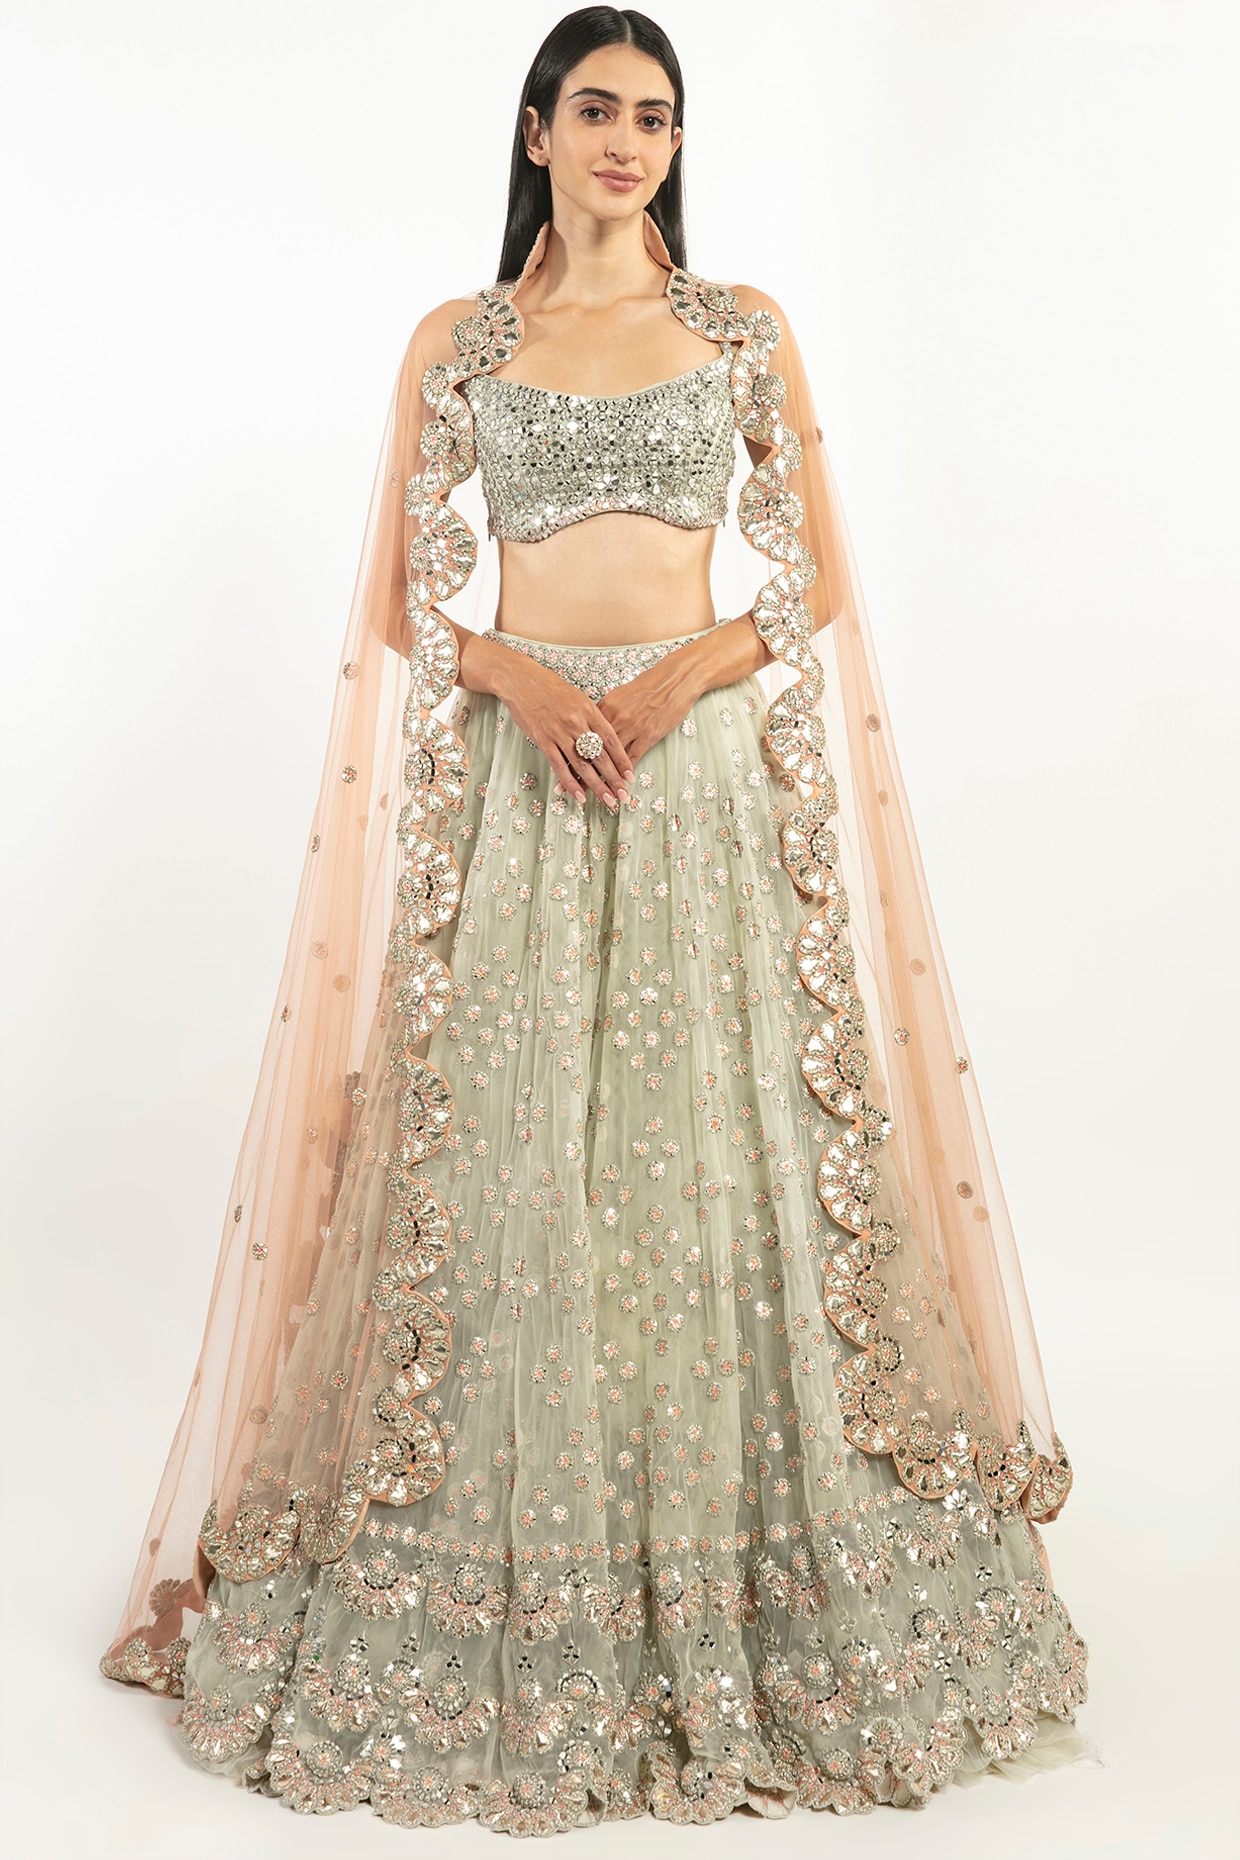 Sonam Kapoor in Abhinav Mishra – South India Fashion | Pink bridal lehenga,  India fashion, Ethnic outfits